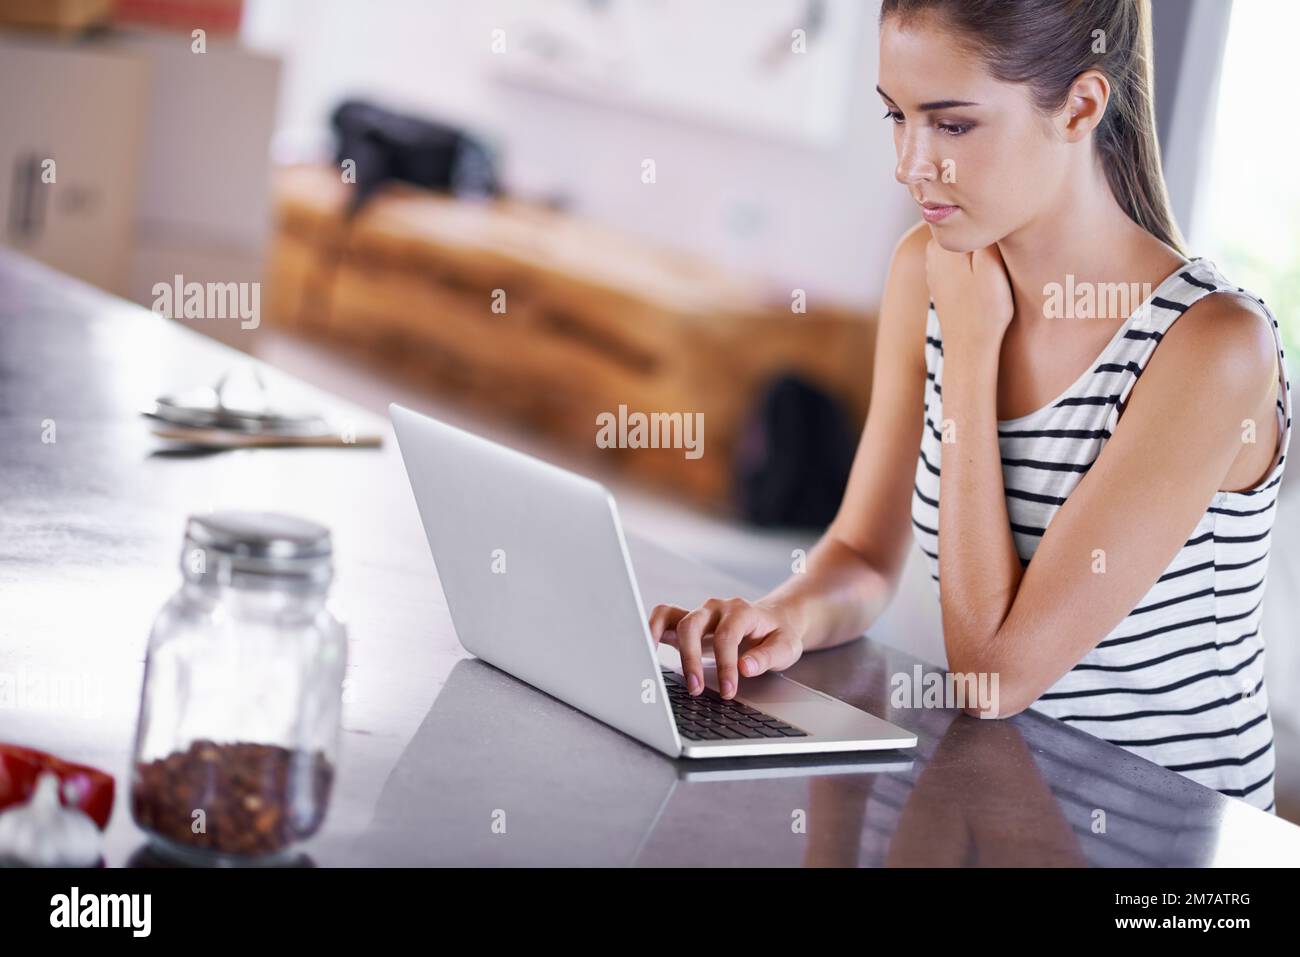 Auf der Suche nach einem guten Rezept. Porträt einer attraktiven jungen Frau, die ihren Laptop in der Küche benutzt. Stockfoto